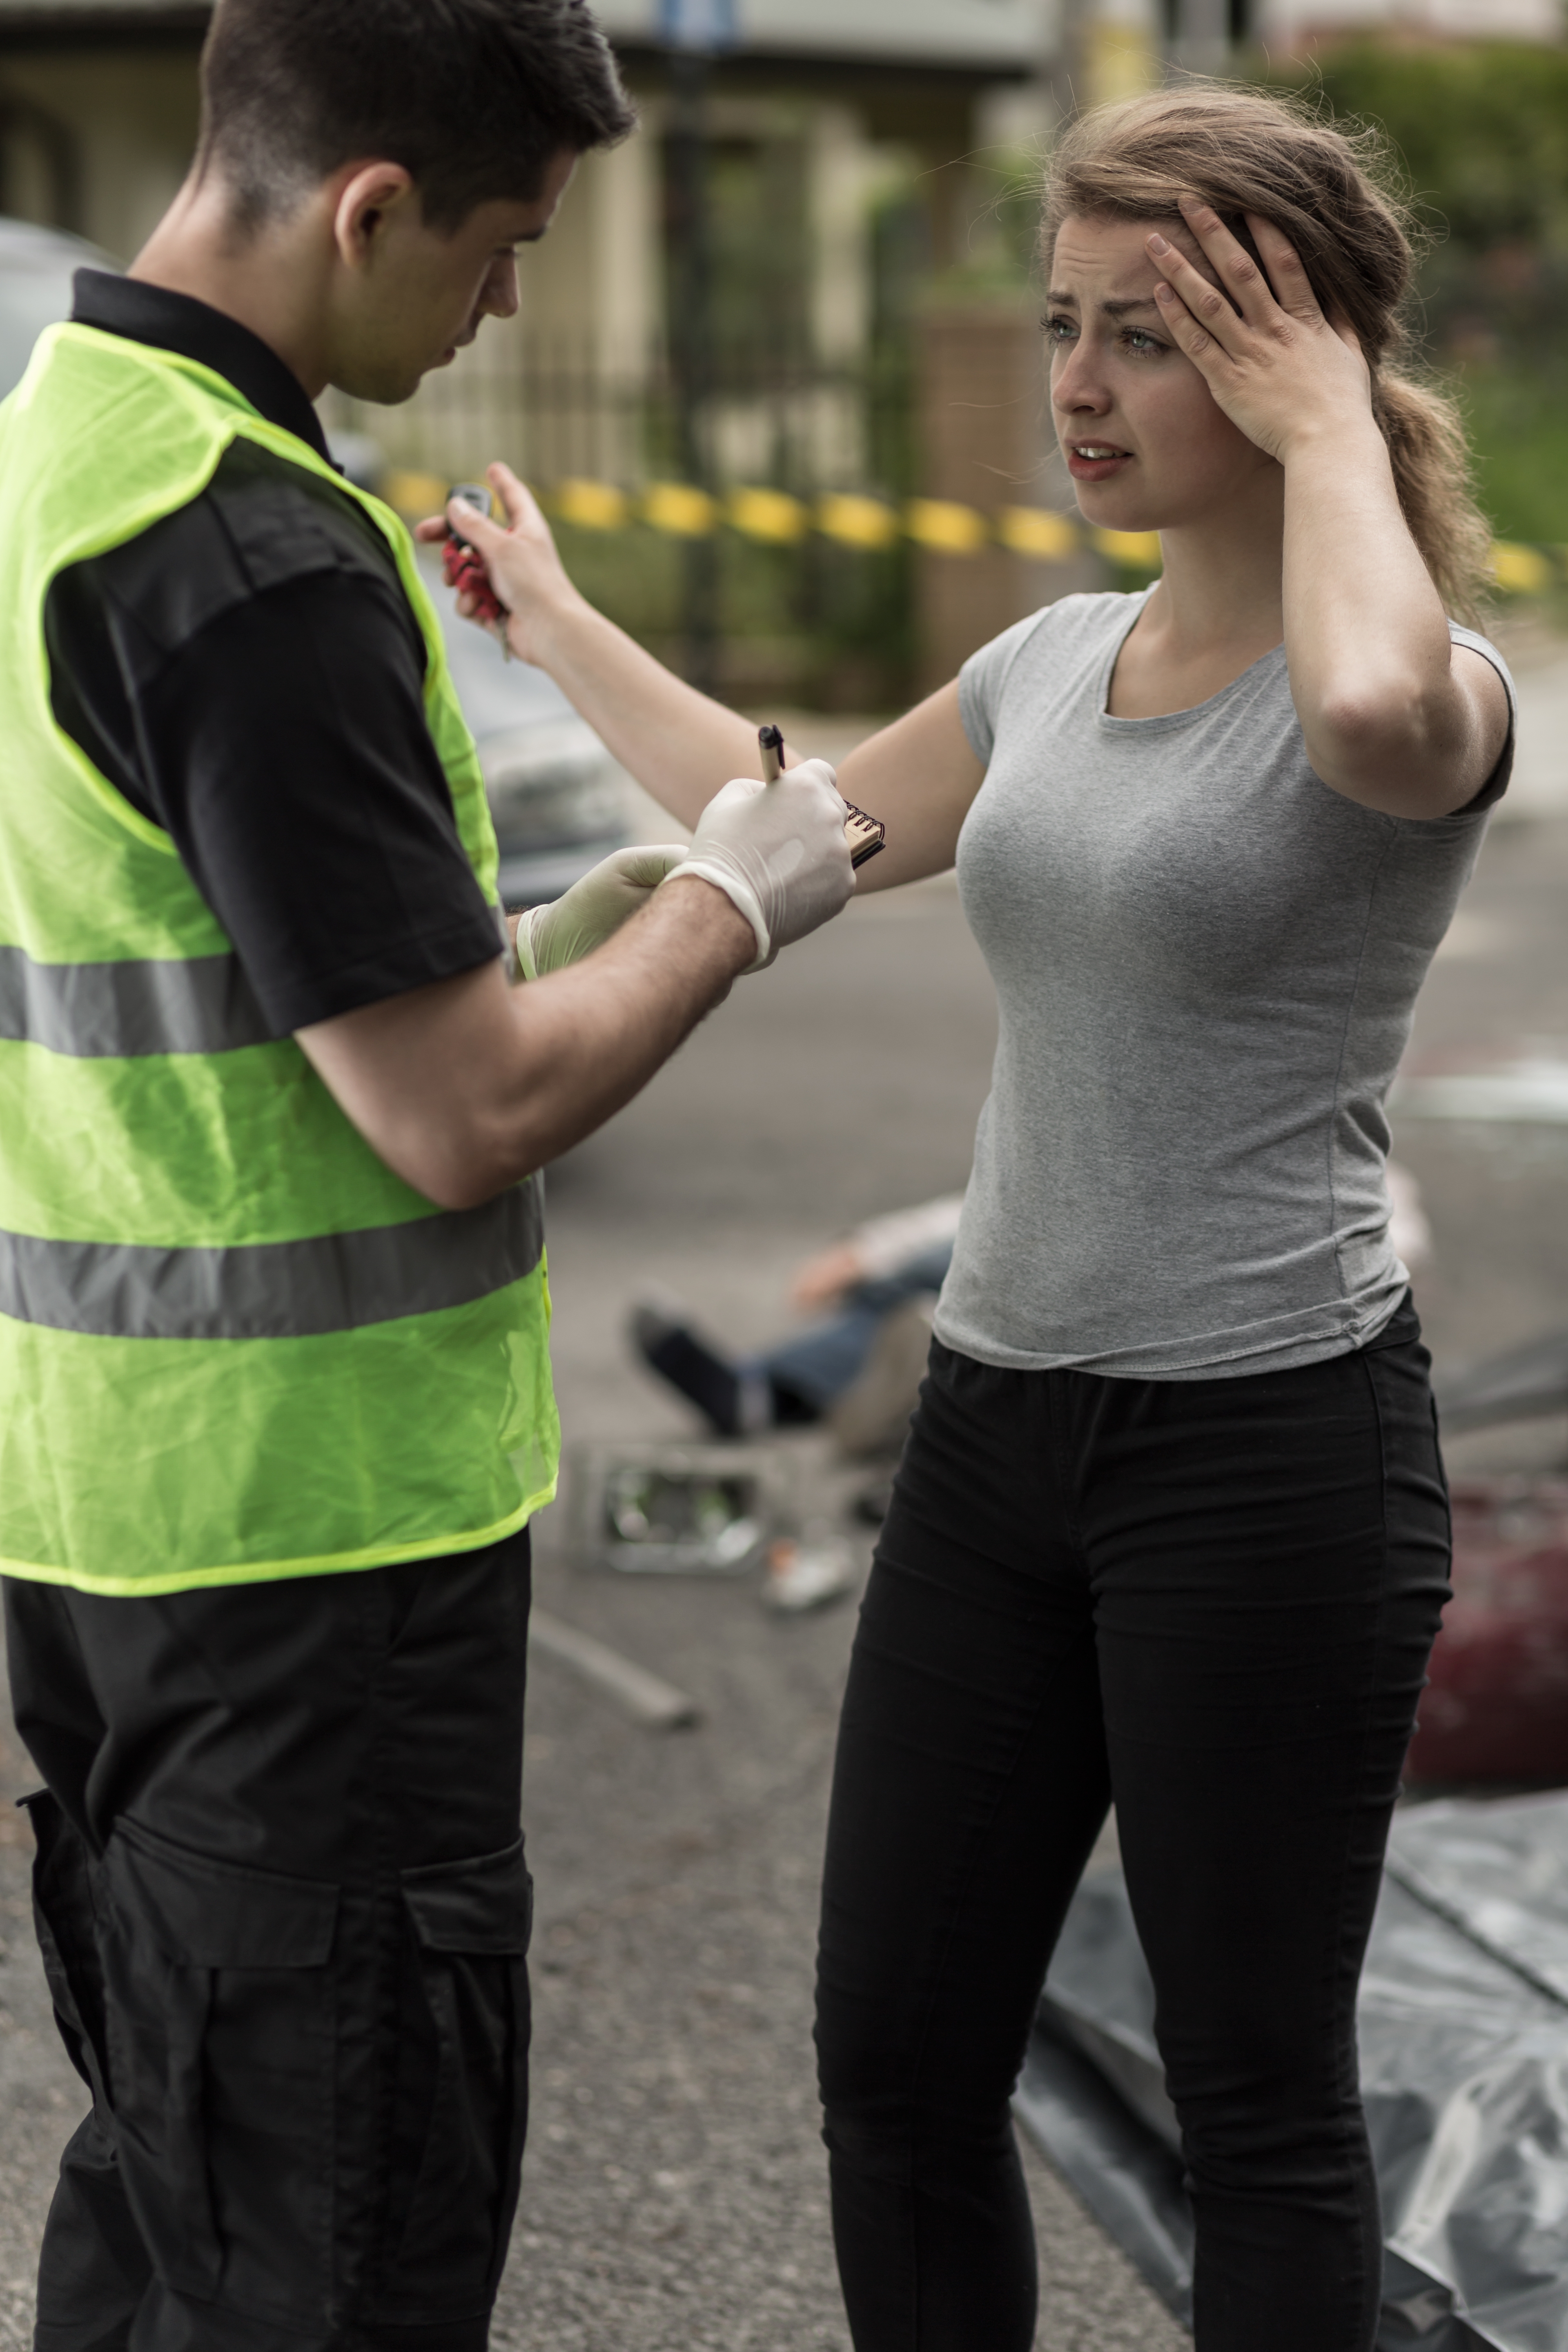 Une femme fait une déclaration à un officier de police. | Source : Shutterstock